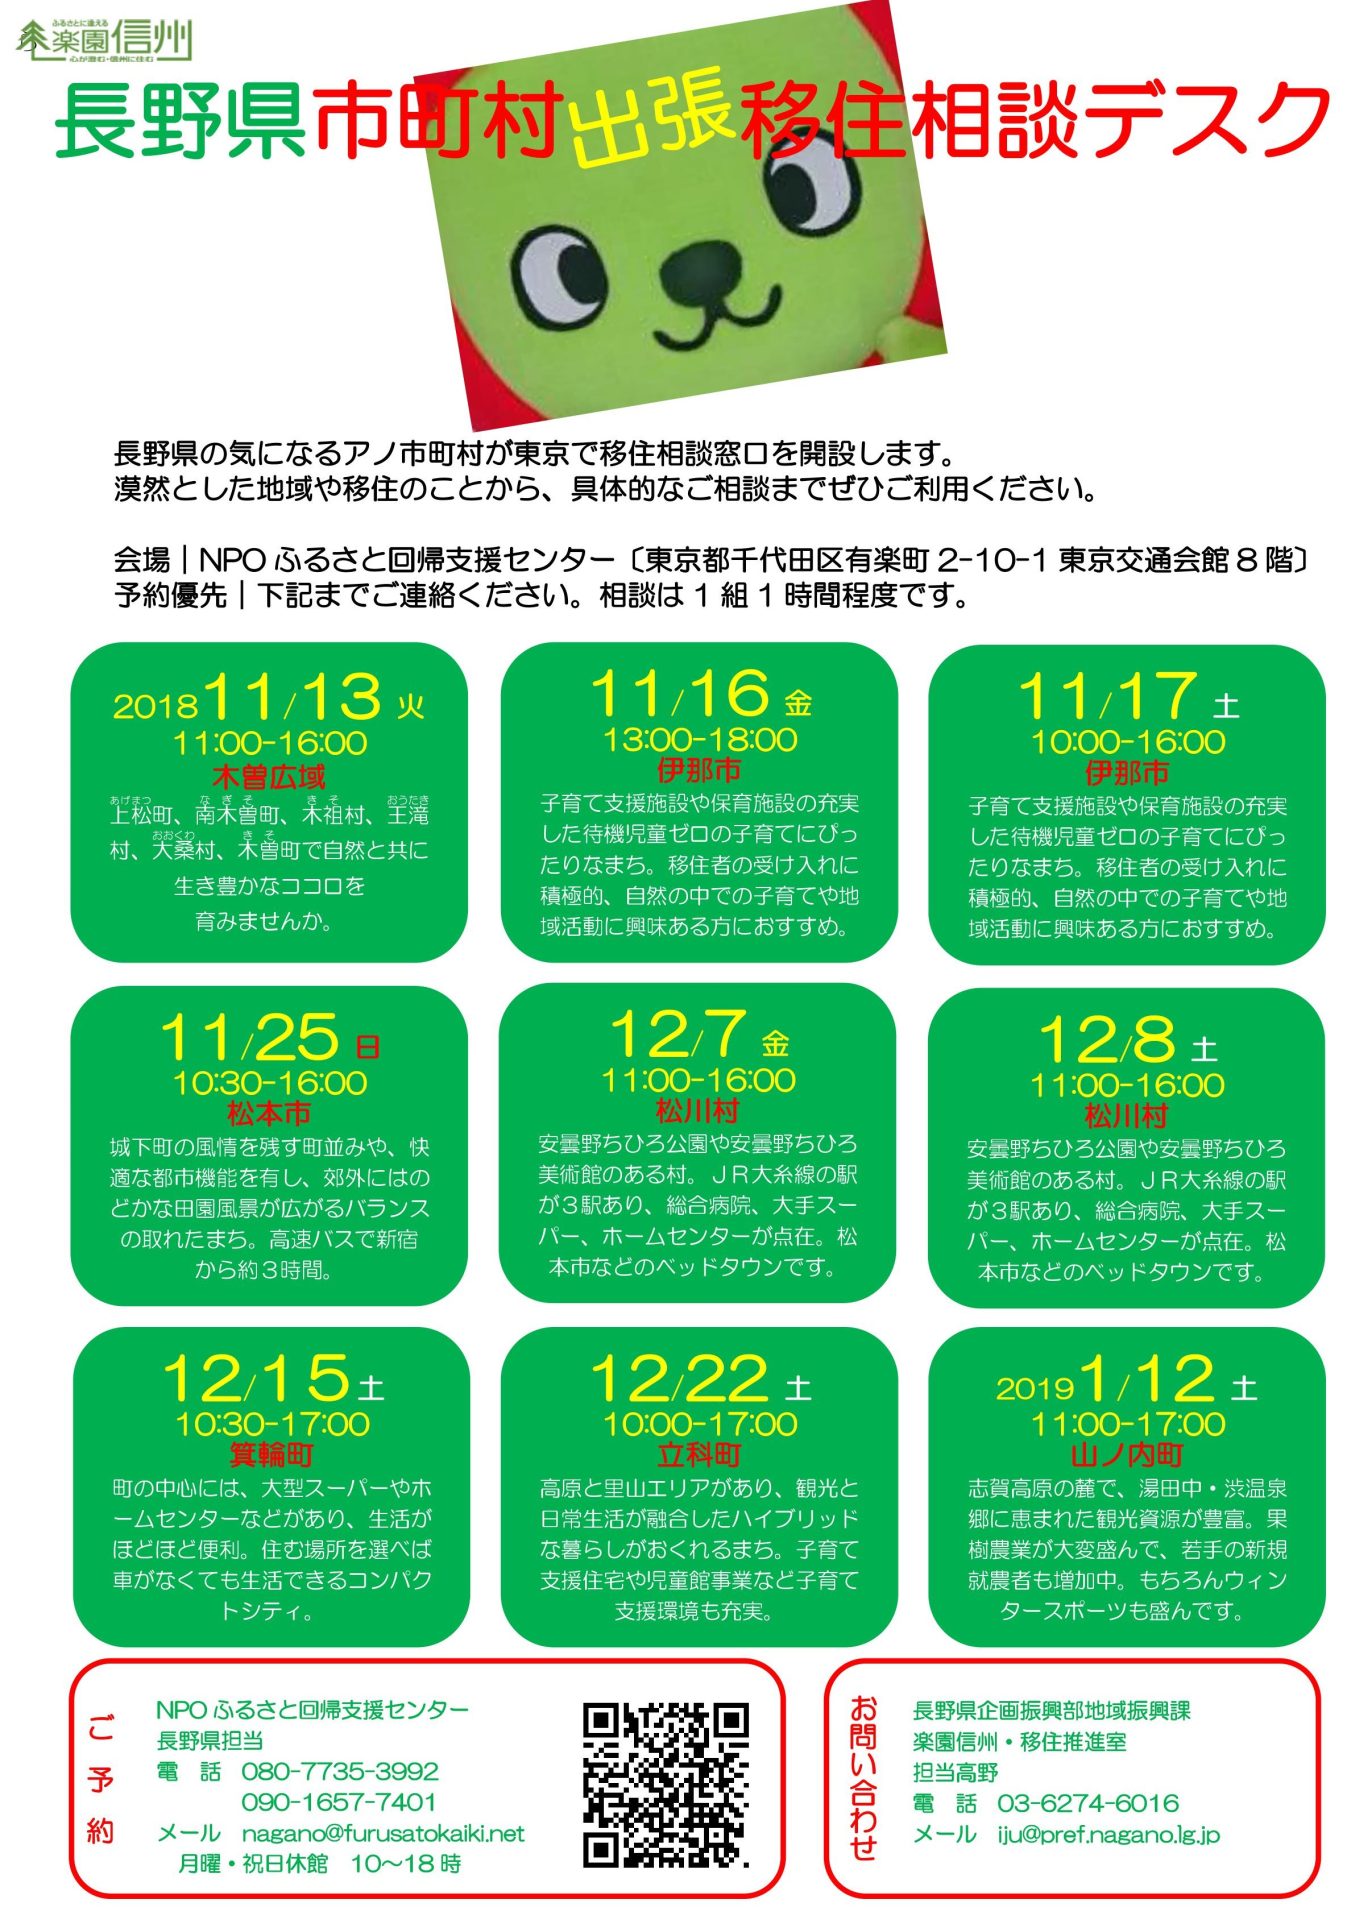 【満員御礼】長野県 市町村の出張相談デスク11月《松本市》 | 移住関連イベント情報